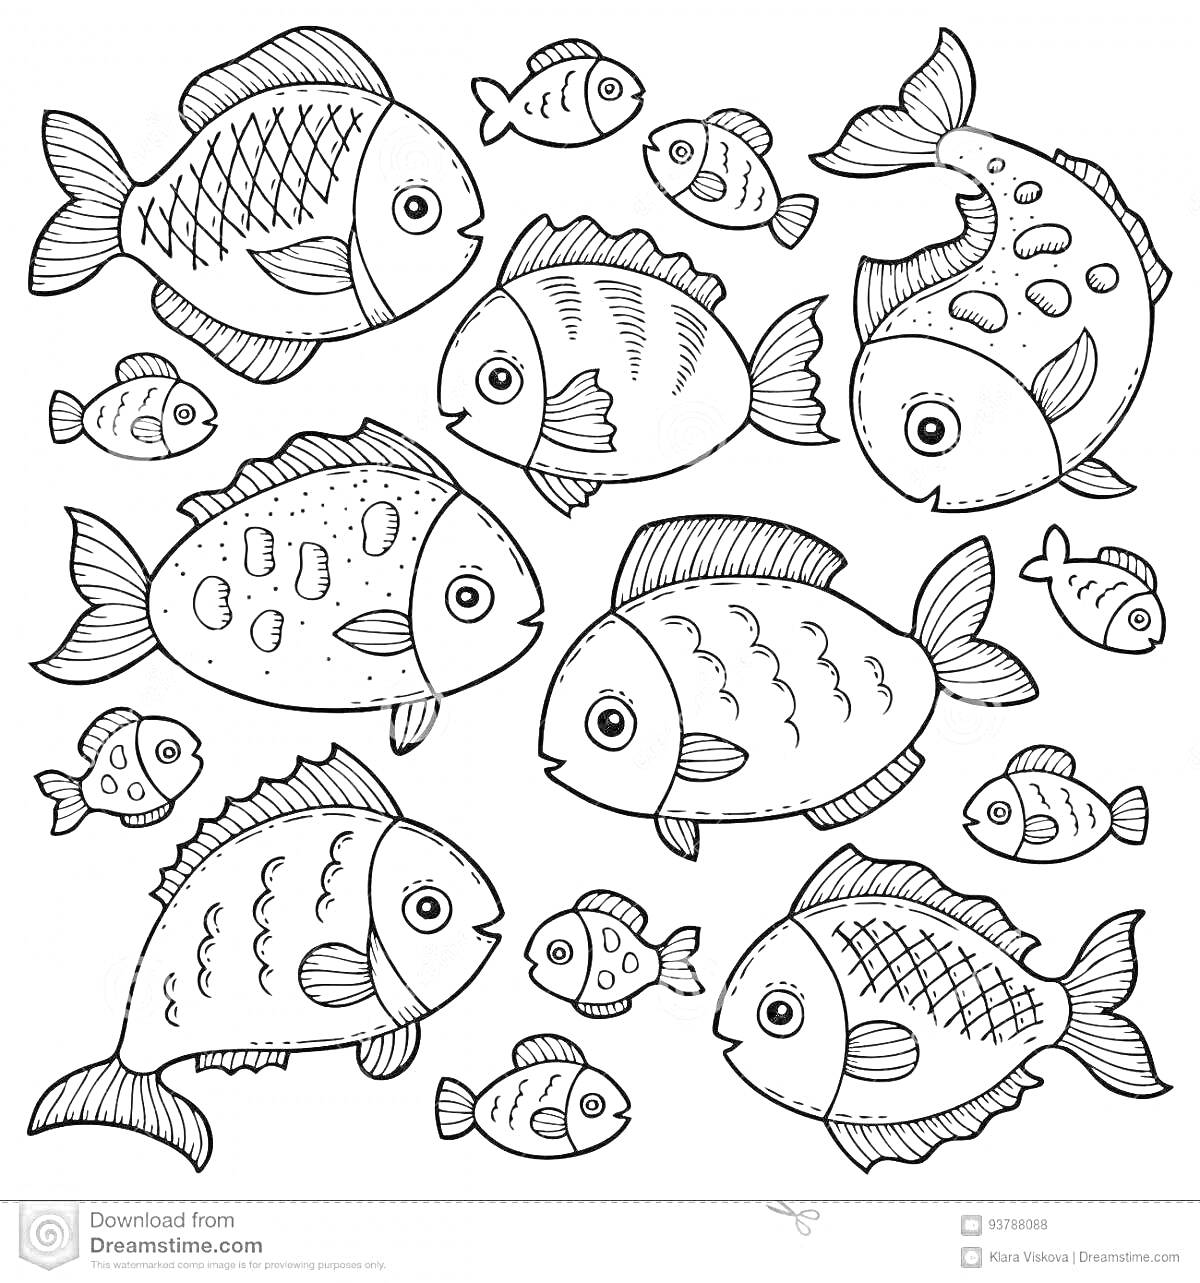 Раскраска Раскраска с маленькими и большими рыбками разных форм и узоров